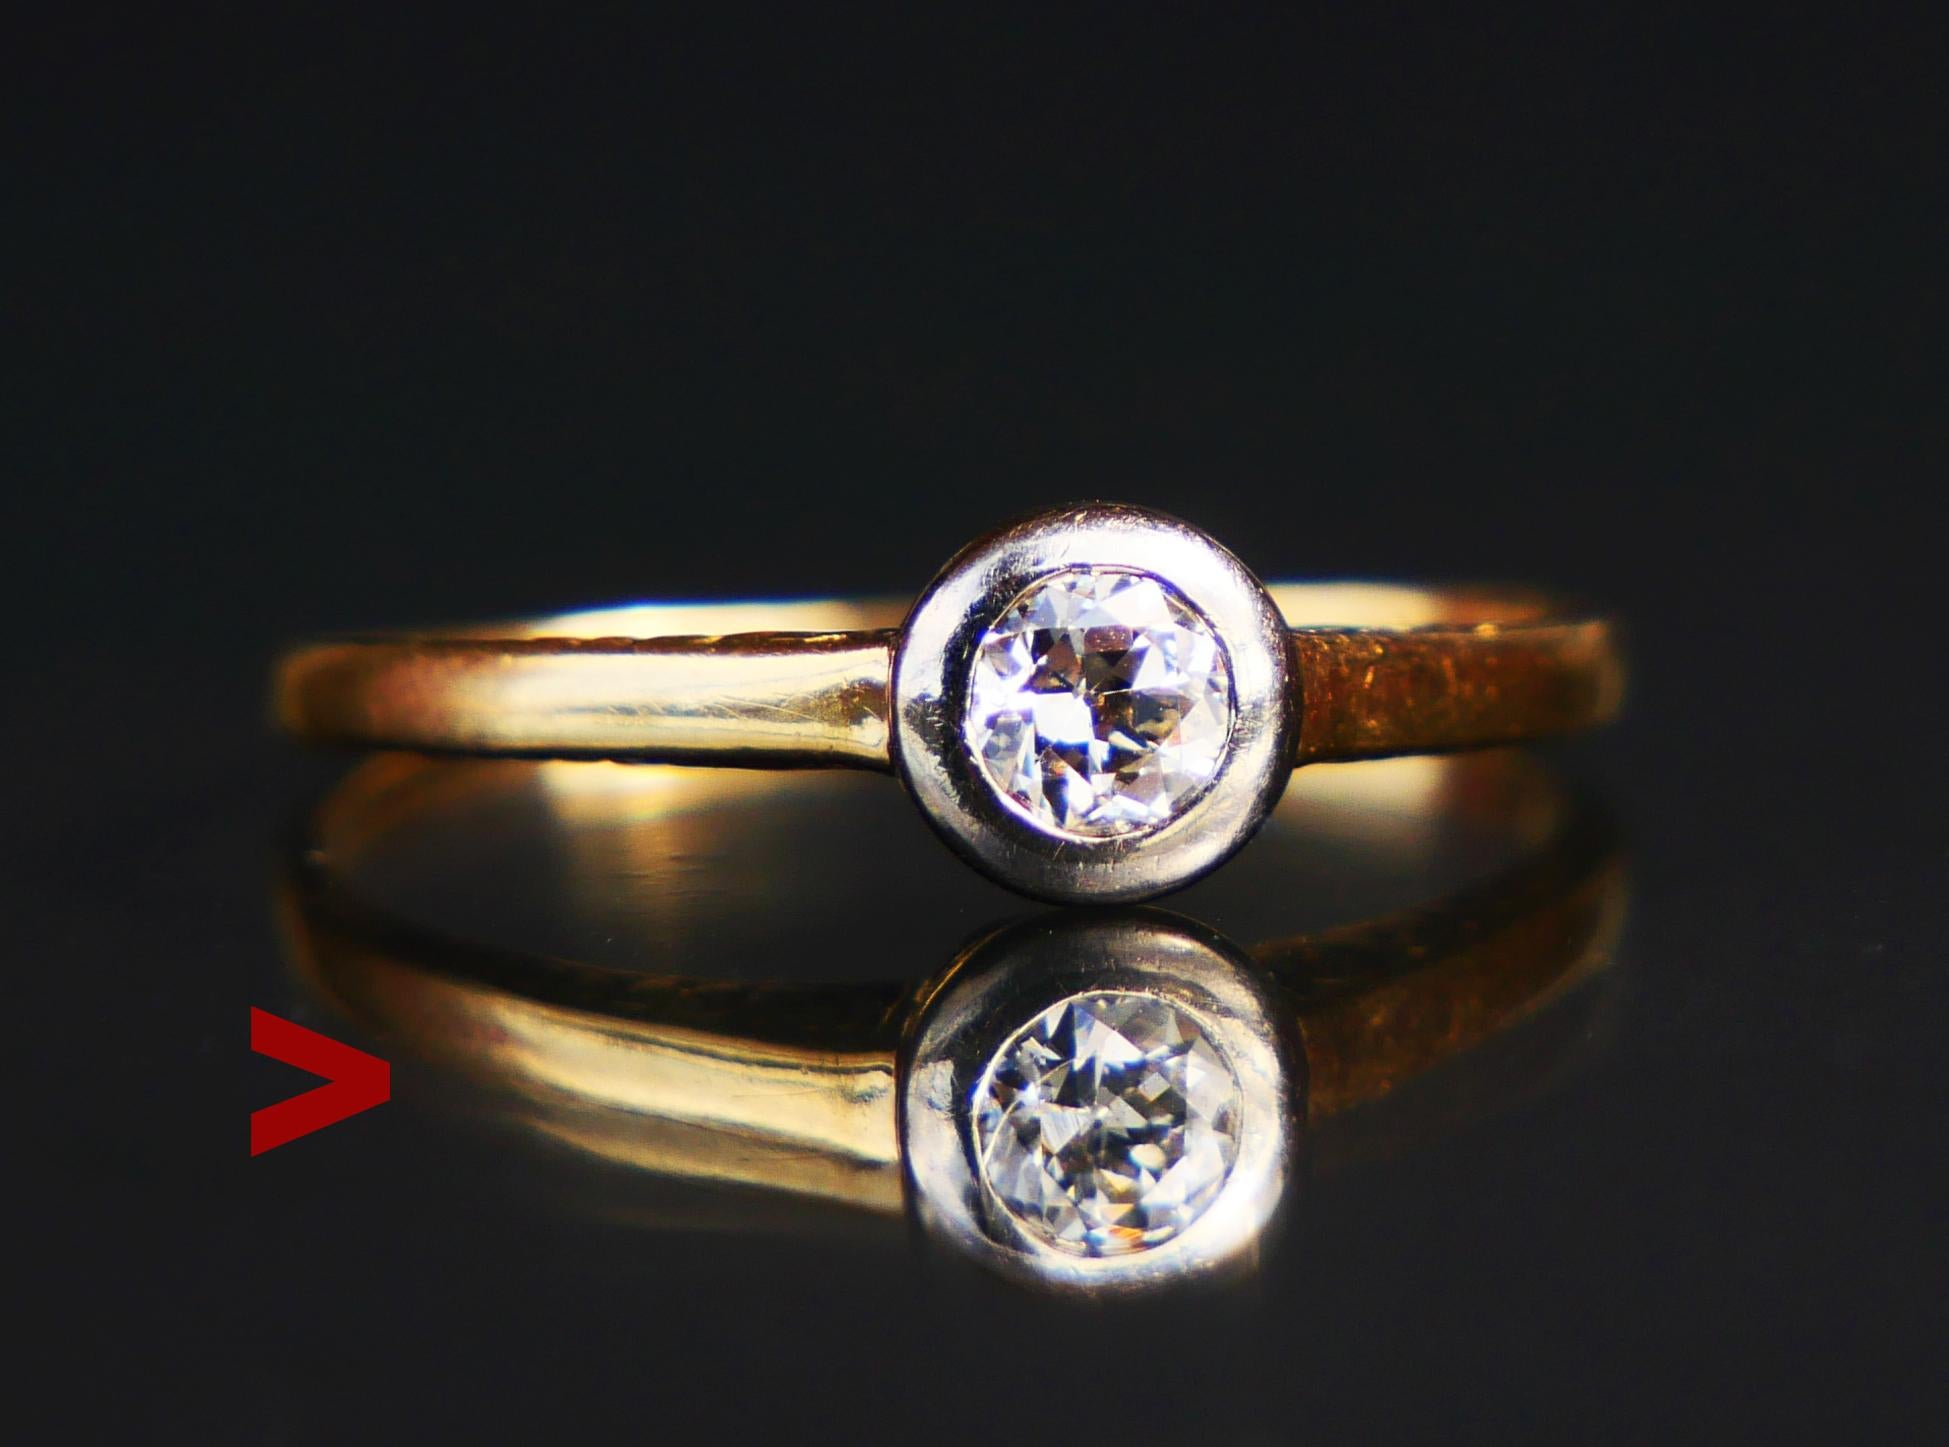 Feiner antiker Ring, hergestellt in Europa, ca. 1920er Jahre.

Massive 14K Gelbgold Band, geschnitzt Ornamente auf den Schultern. Alt-europäischer Schliff Diamant in Weißgold Lünette misst Ø 4 mm x 2,2 mm tief / ca. 0,25 ct. Farbe ca H,I / SI.